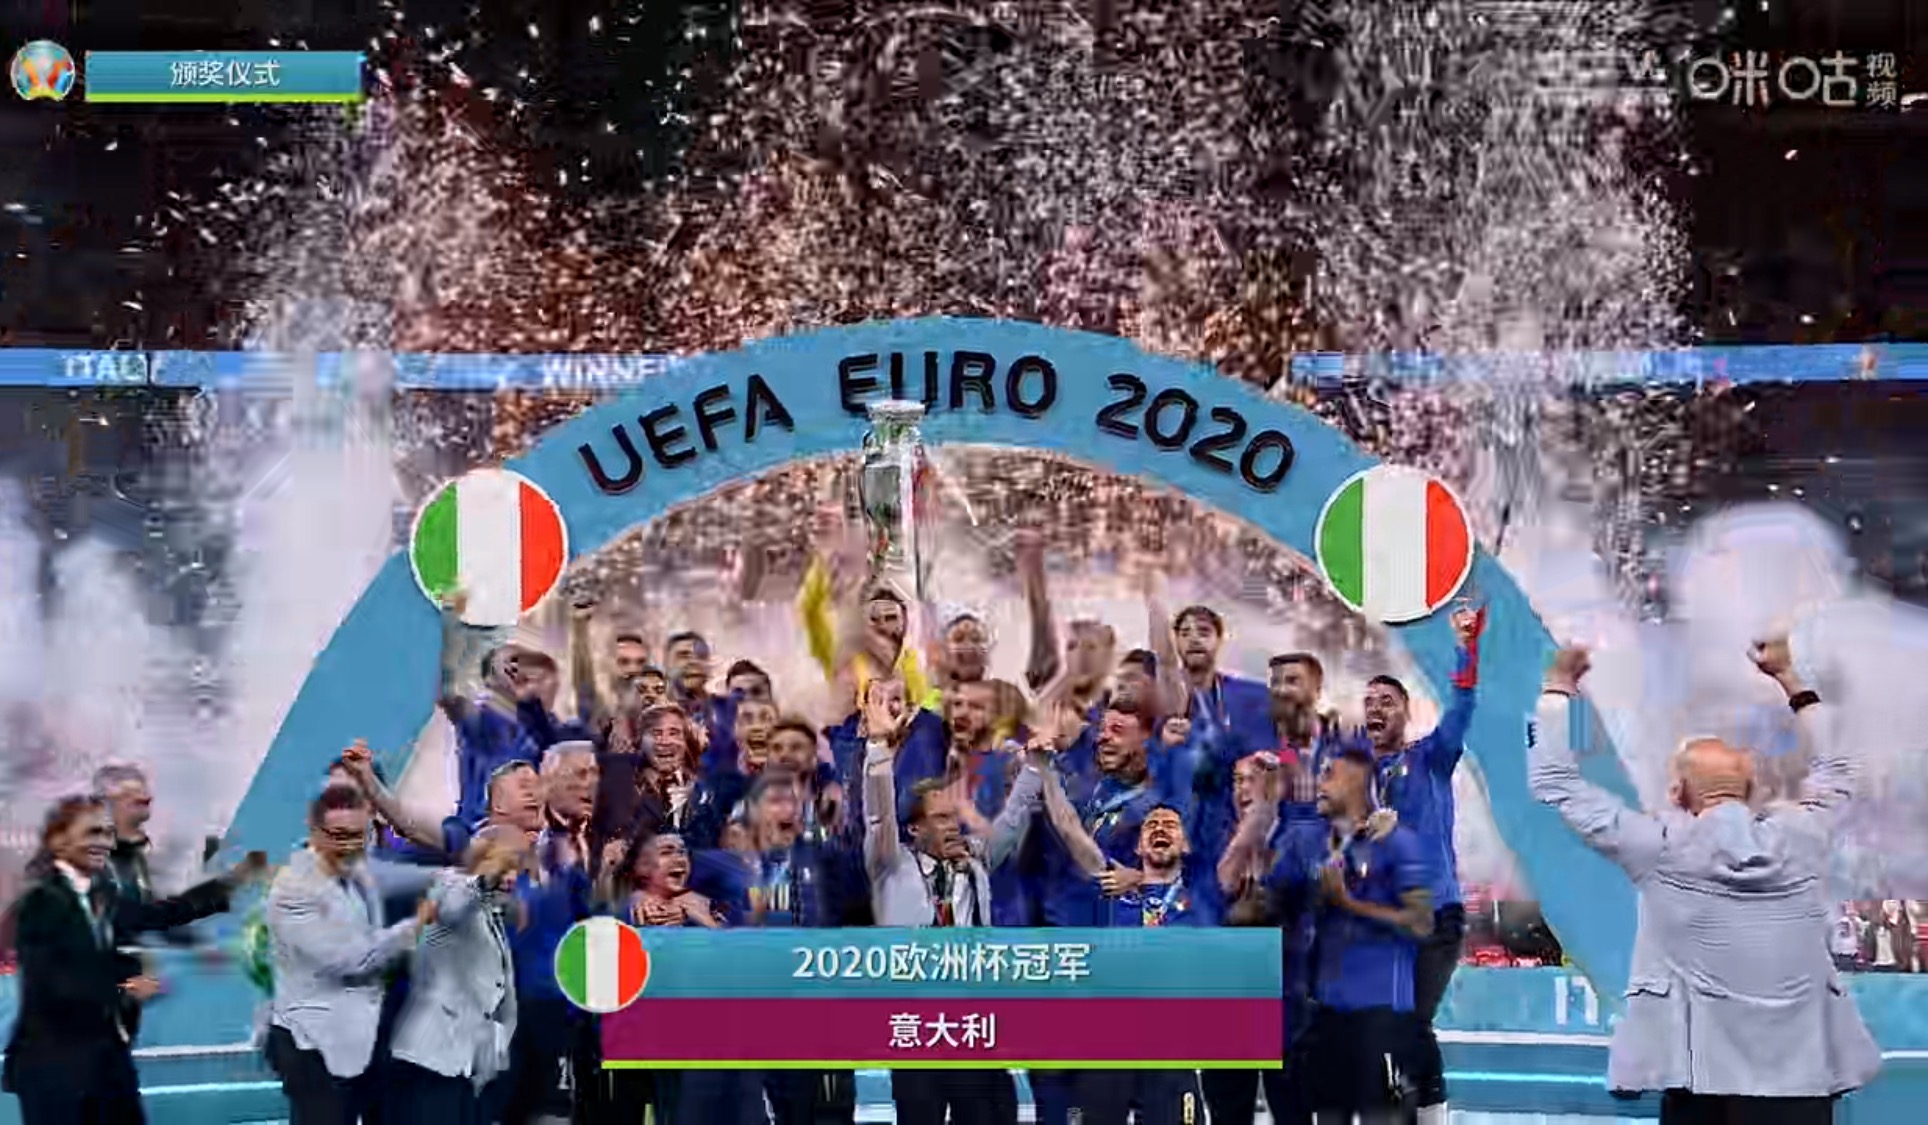 冠军归属蓝色！意大利点胜英格兰夺得欧洲杯冠军